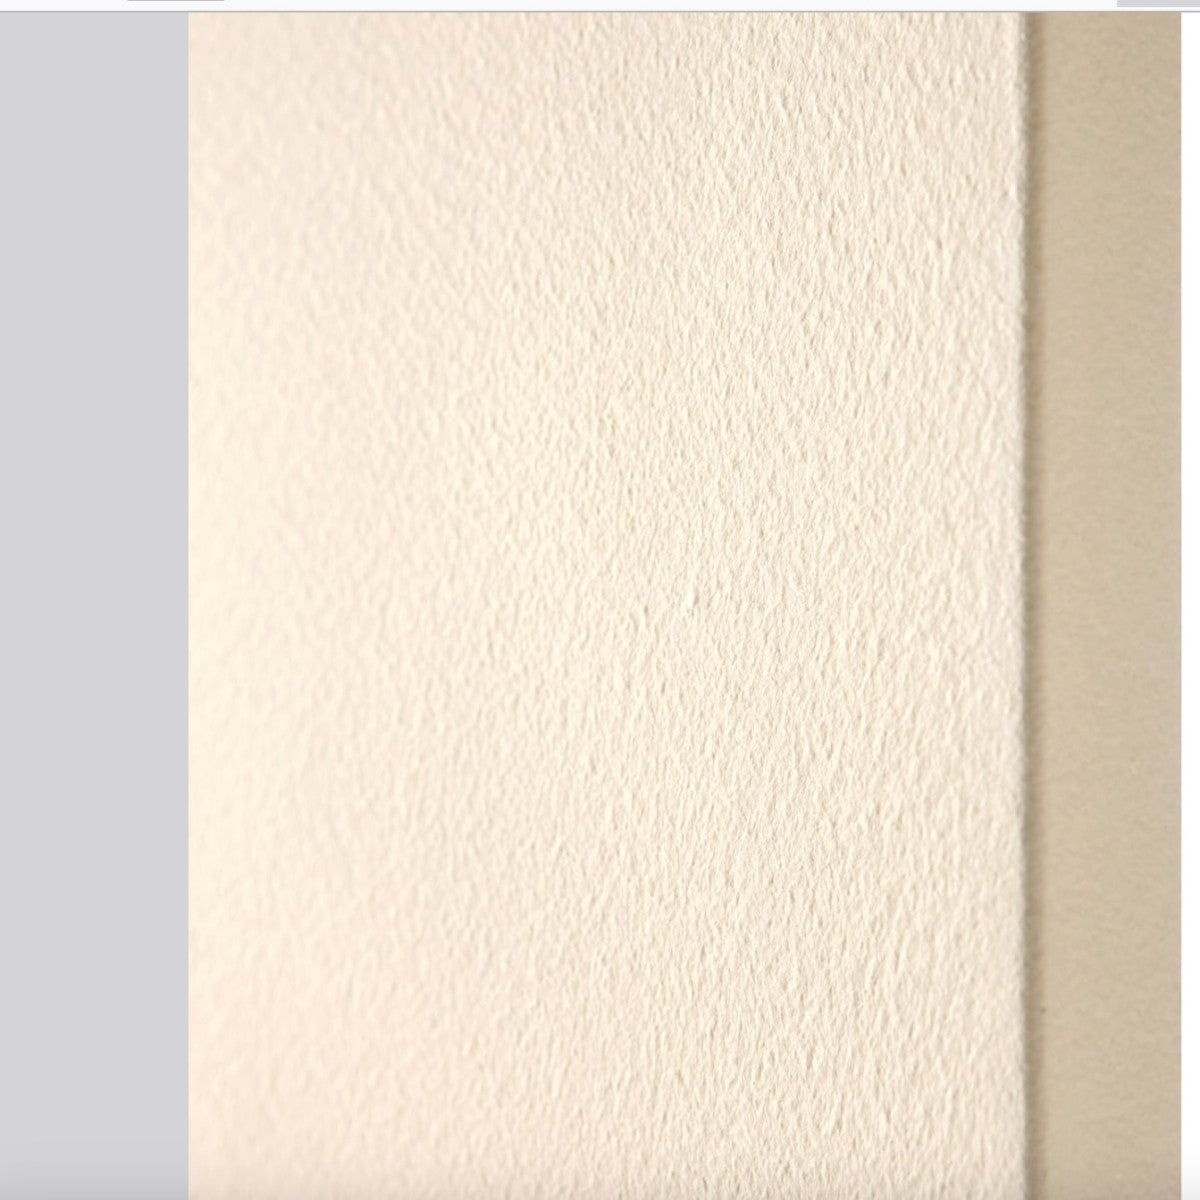 Termoarredo idraulico in marmo bianco o colorato perfetto, dimensioni 55x110, colore bianco ral 9016